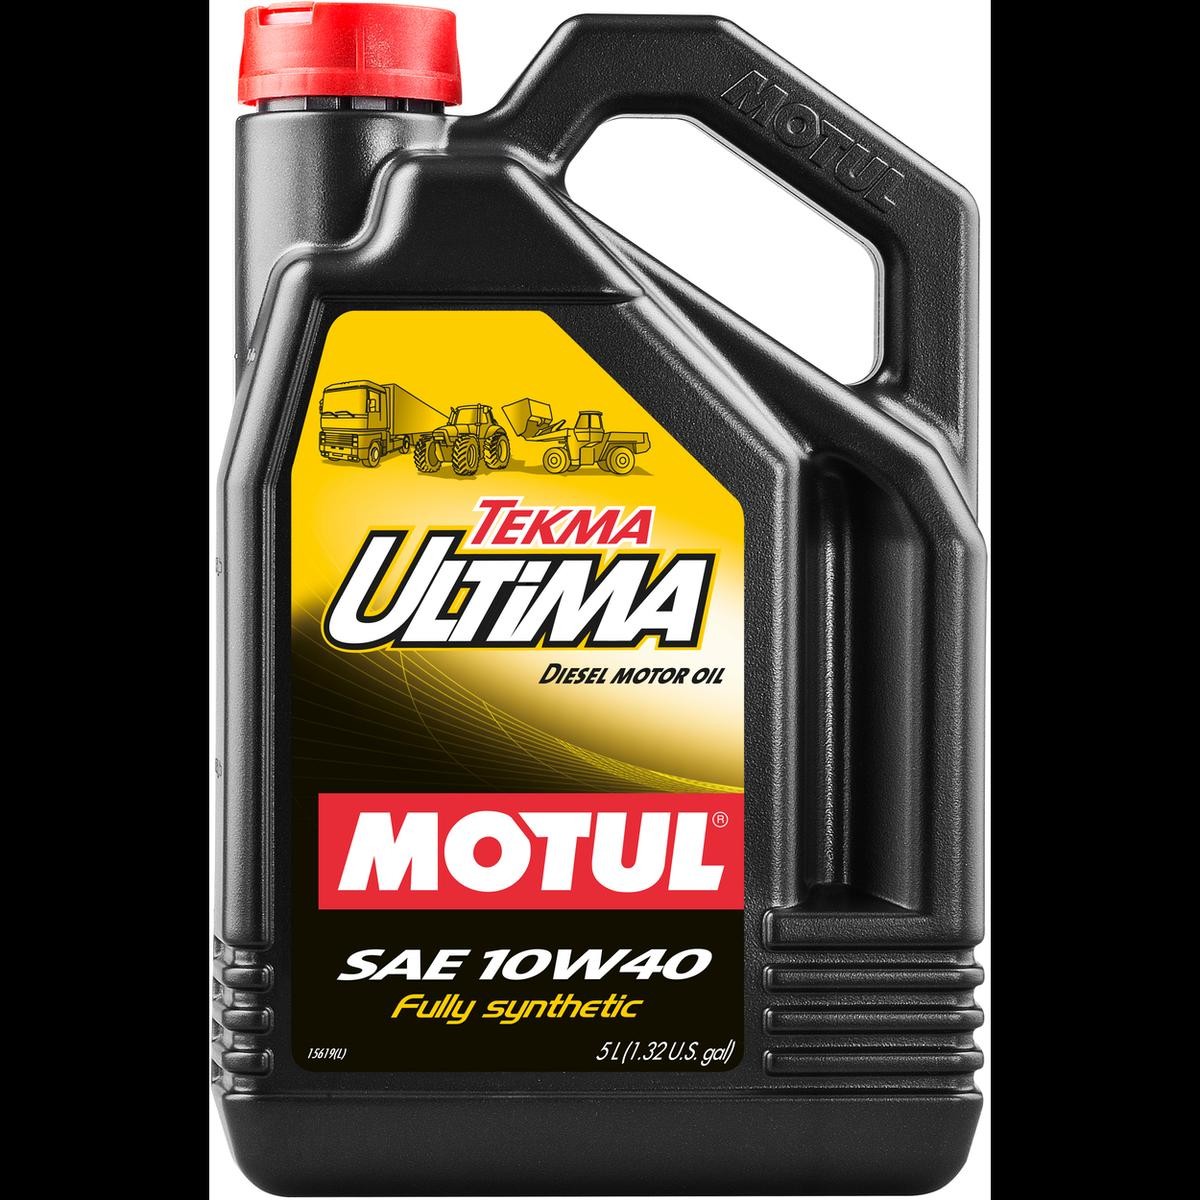 MOTUL TEKMA, ULTIMA 10W-40, 5l, Part Synthetic Oil Motor oil 106455 buy